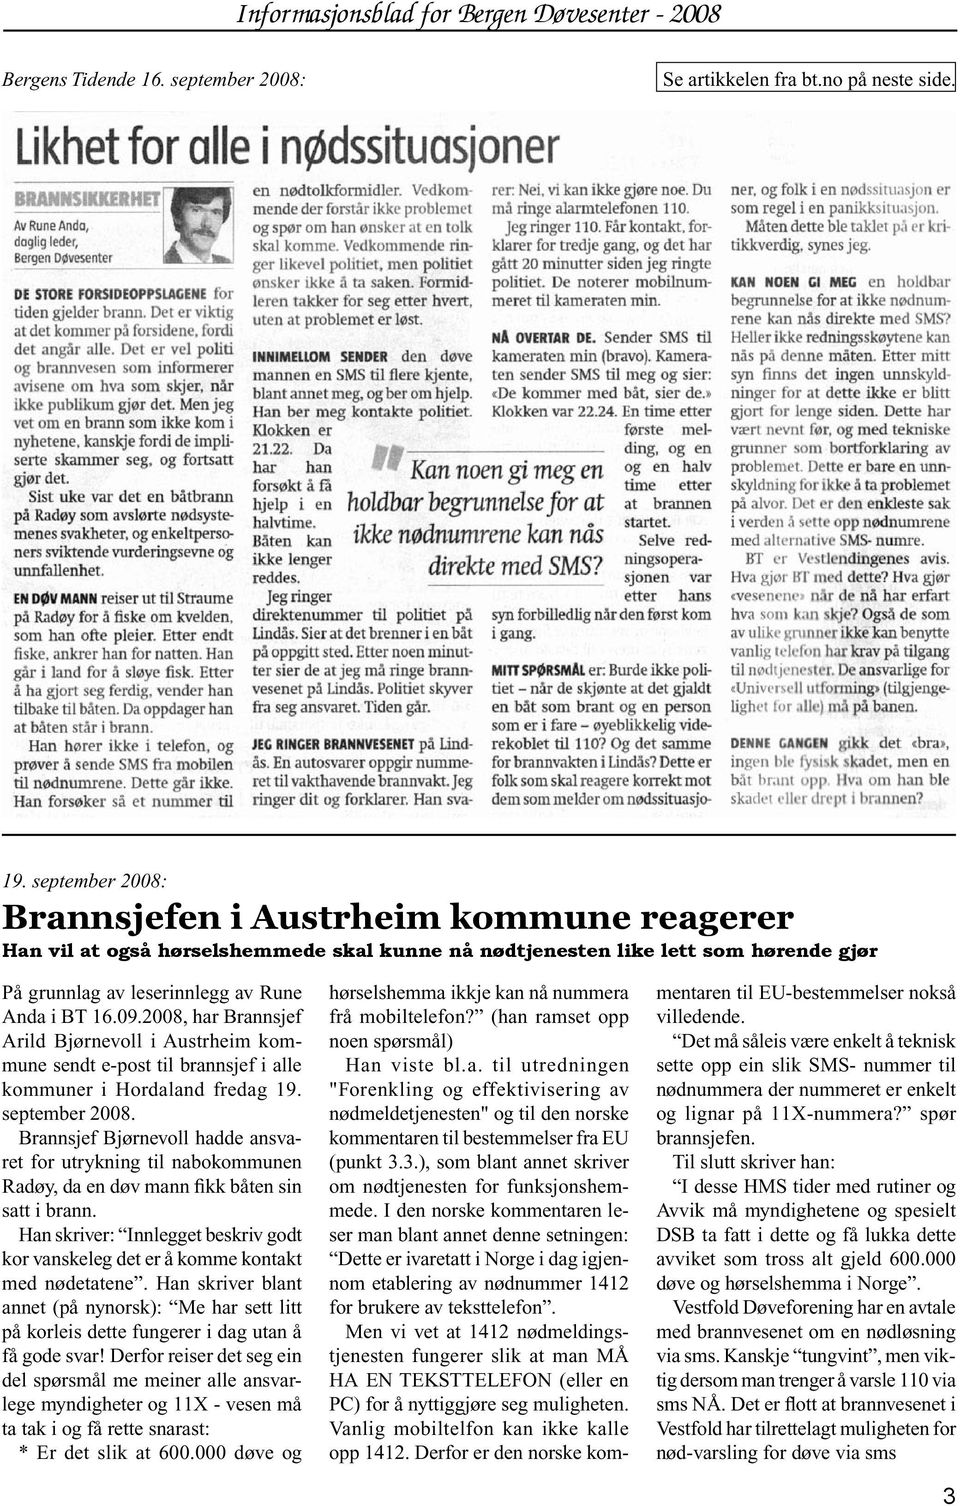 2008, har Brannsjef Arild Bjørnevoll i Austrheim kommune sendt e-post til brannsjef i alle kommuner i Hordaland fredag 19. september 2008.